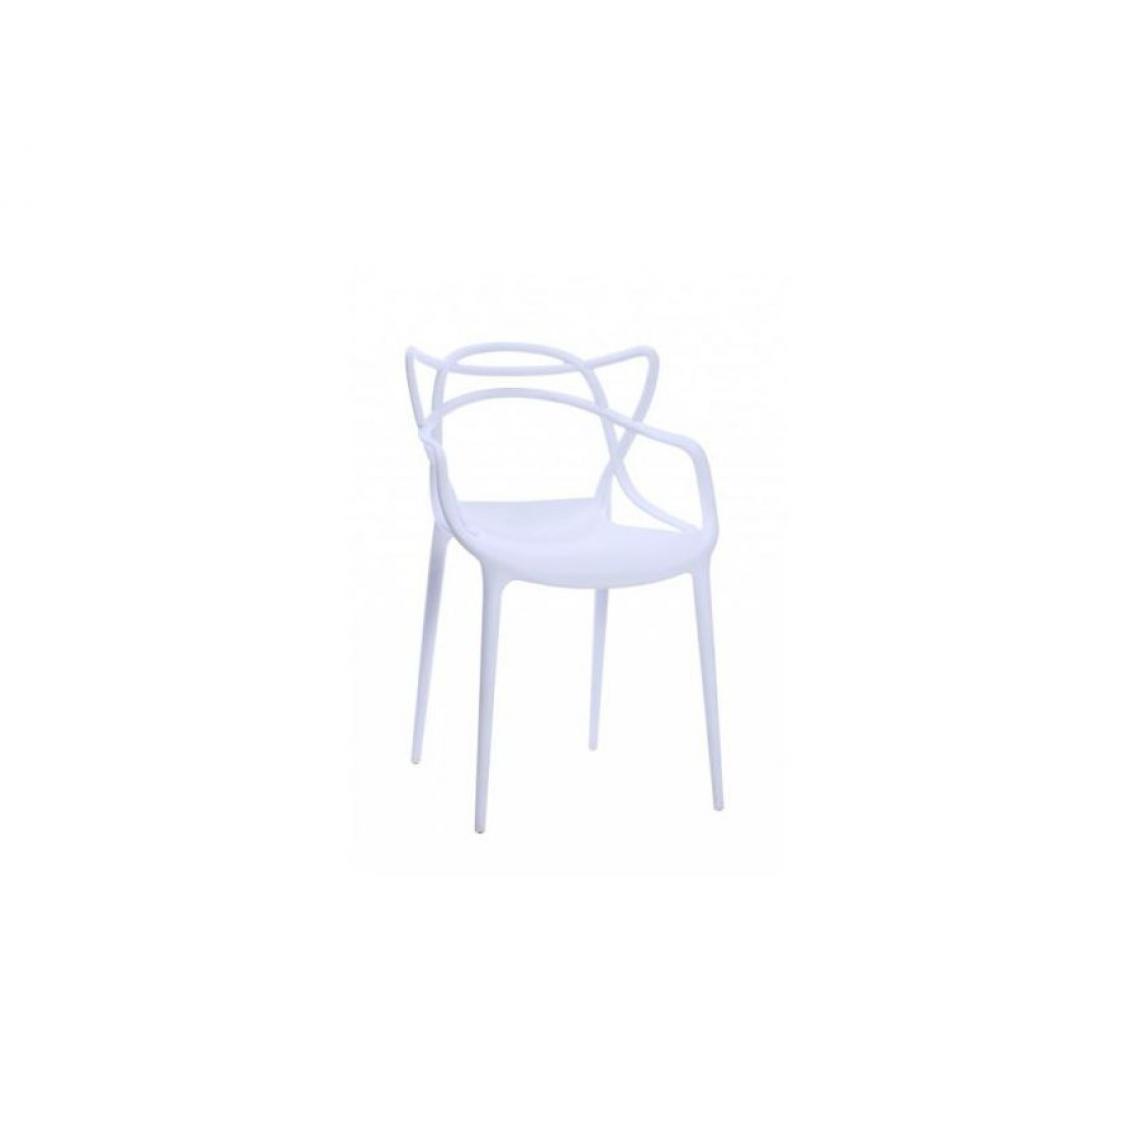 Hucoco - TOBE | Chaise style loft avant-gardiste | Dimensions: 81x55x44 cm | En plastique polypropylène | Dossier original - Blanc - Chaises